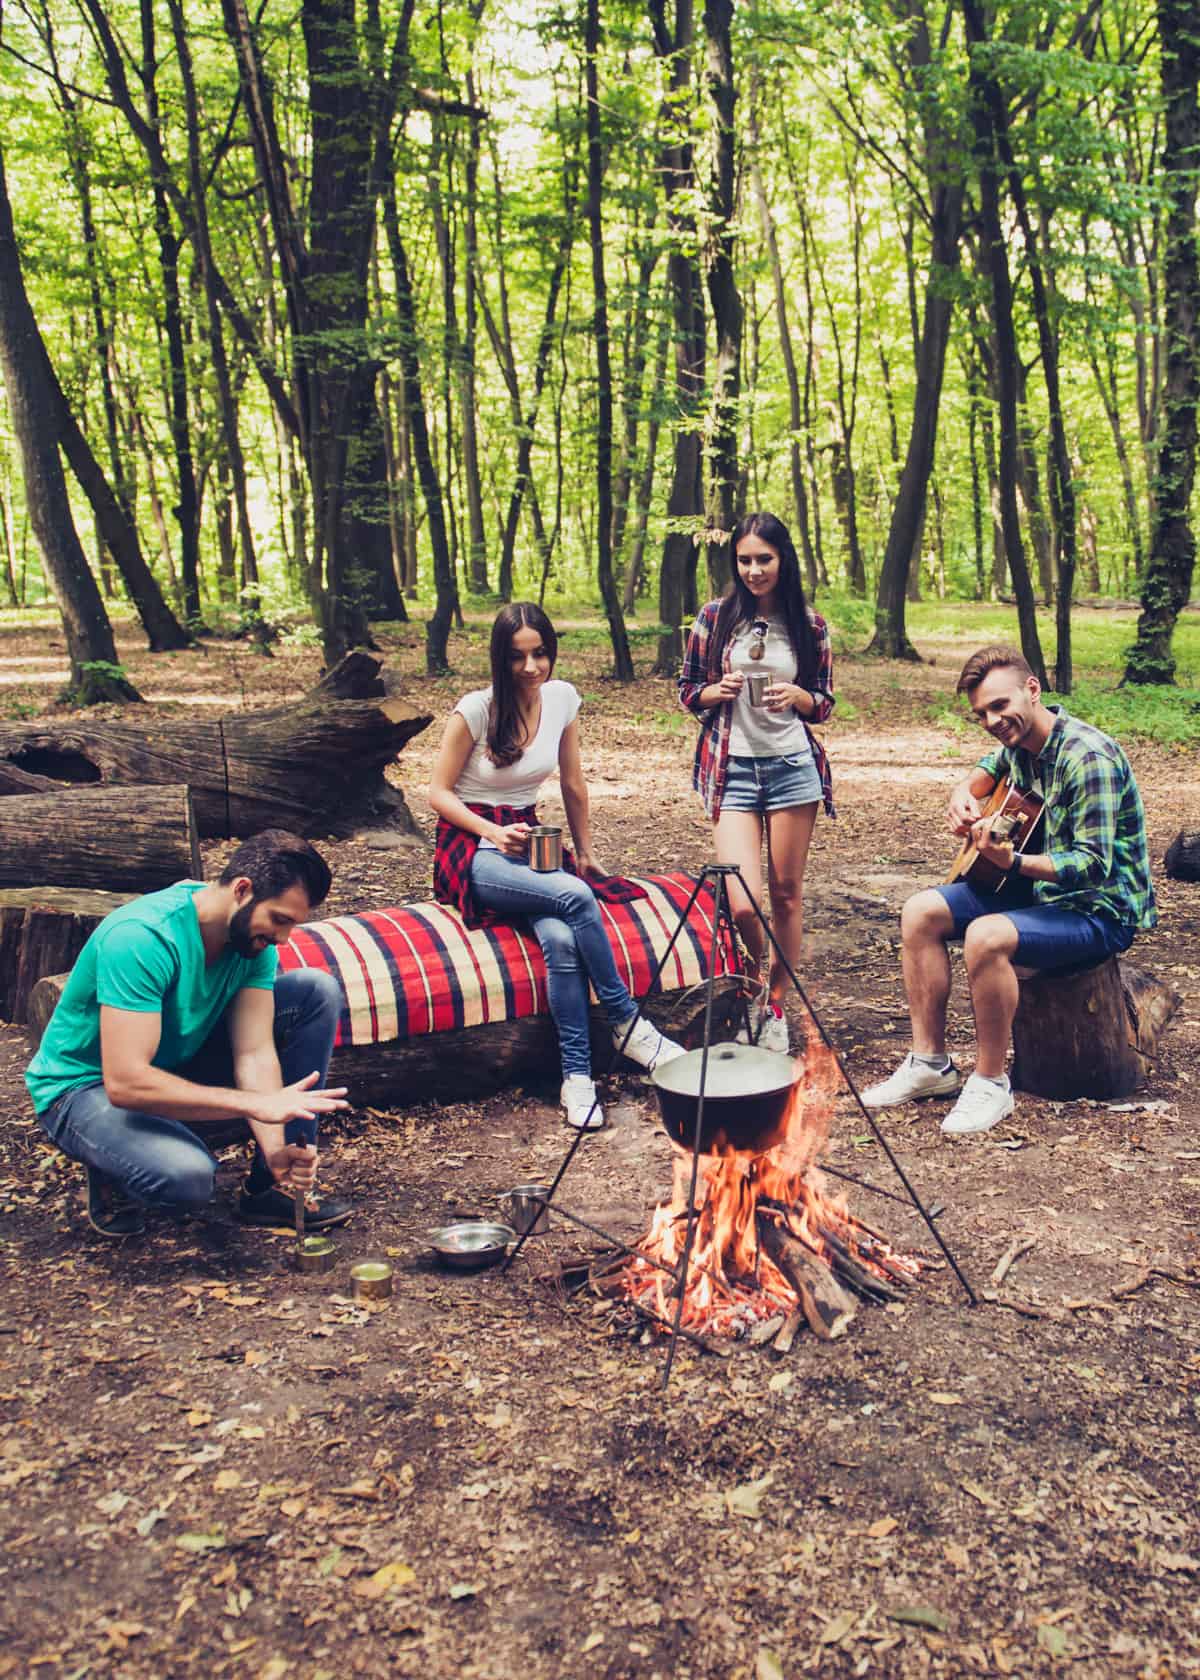 How to make a campfire